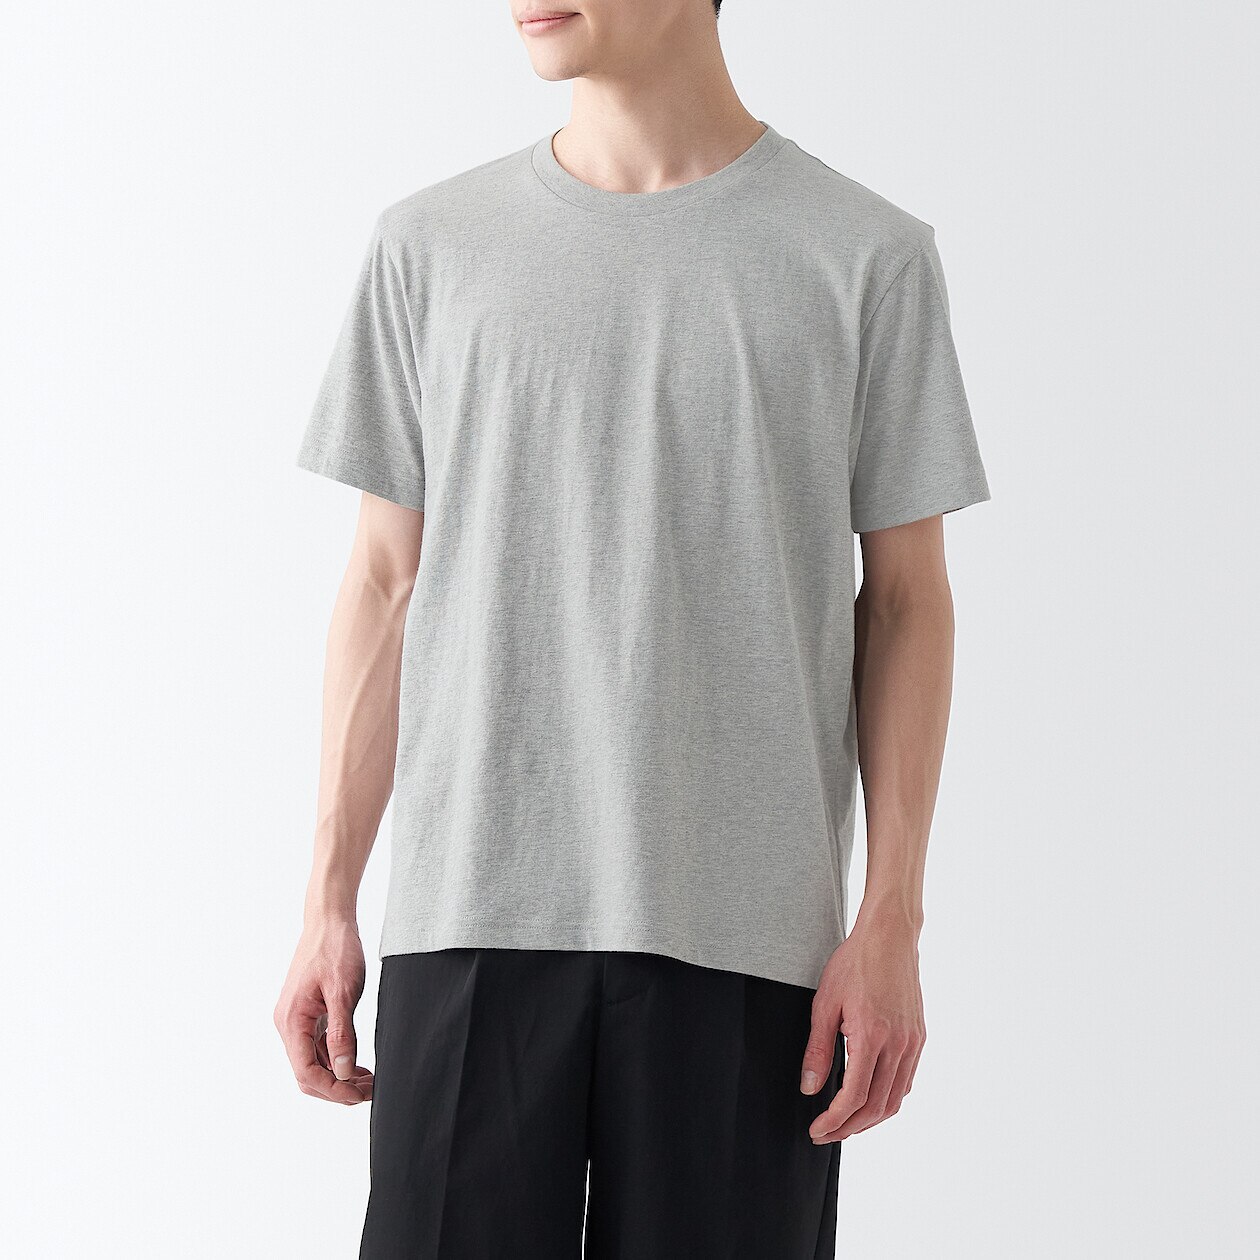 Men's Jersey Short Sleeve T-shirt